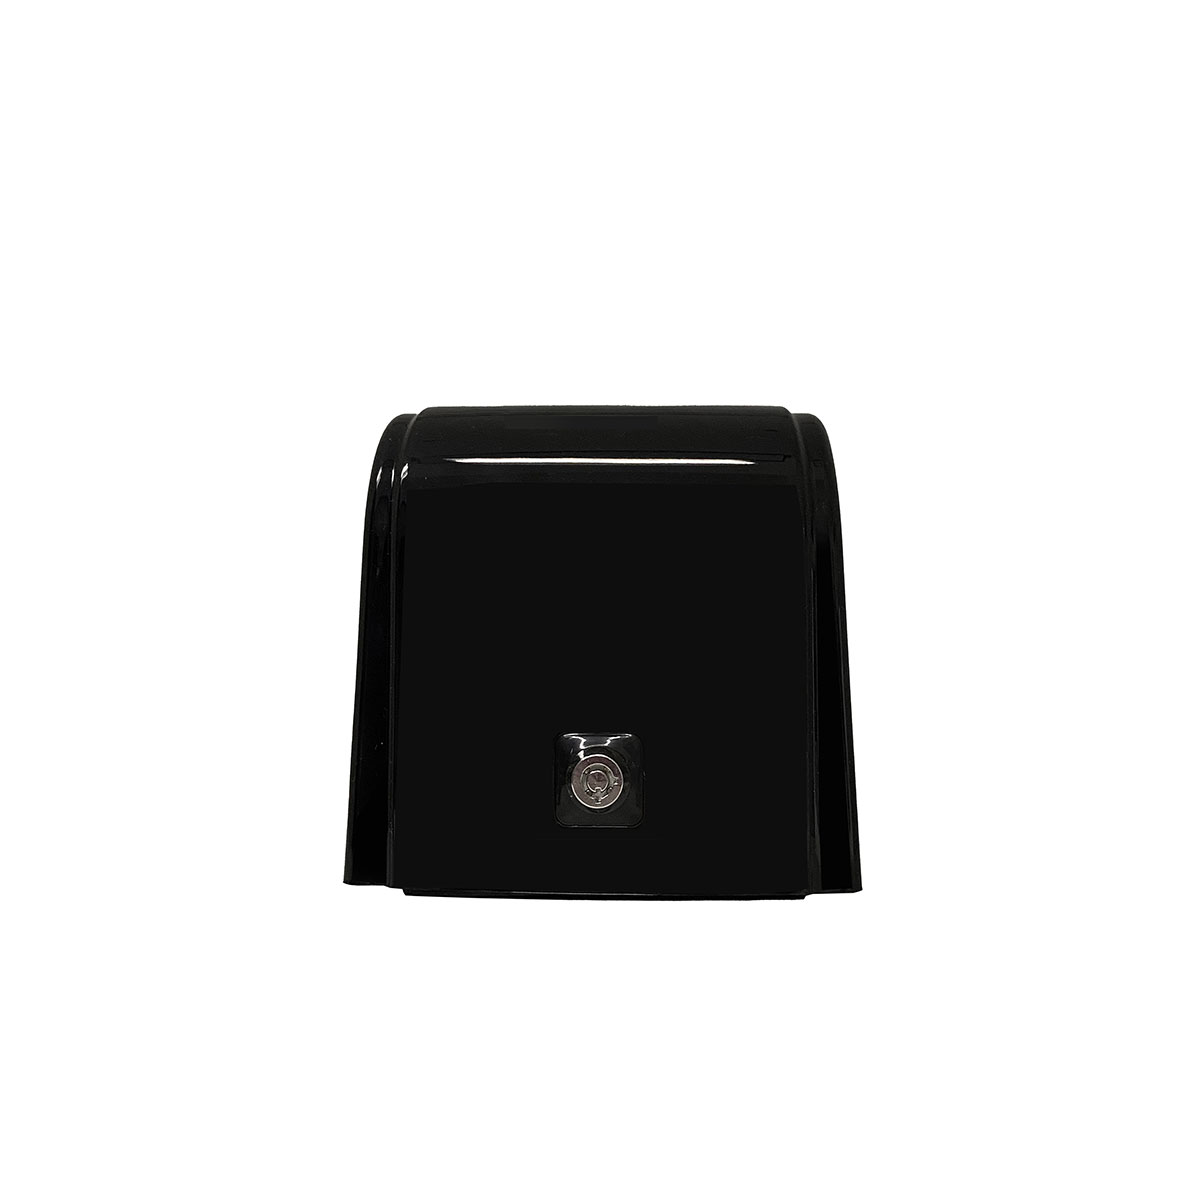 Дозатор для жидкого мыла X7 нажимной 0,7 л БИЗНЕС, корпус черный, стекла прозрачные черные, кнопка черная фото 4